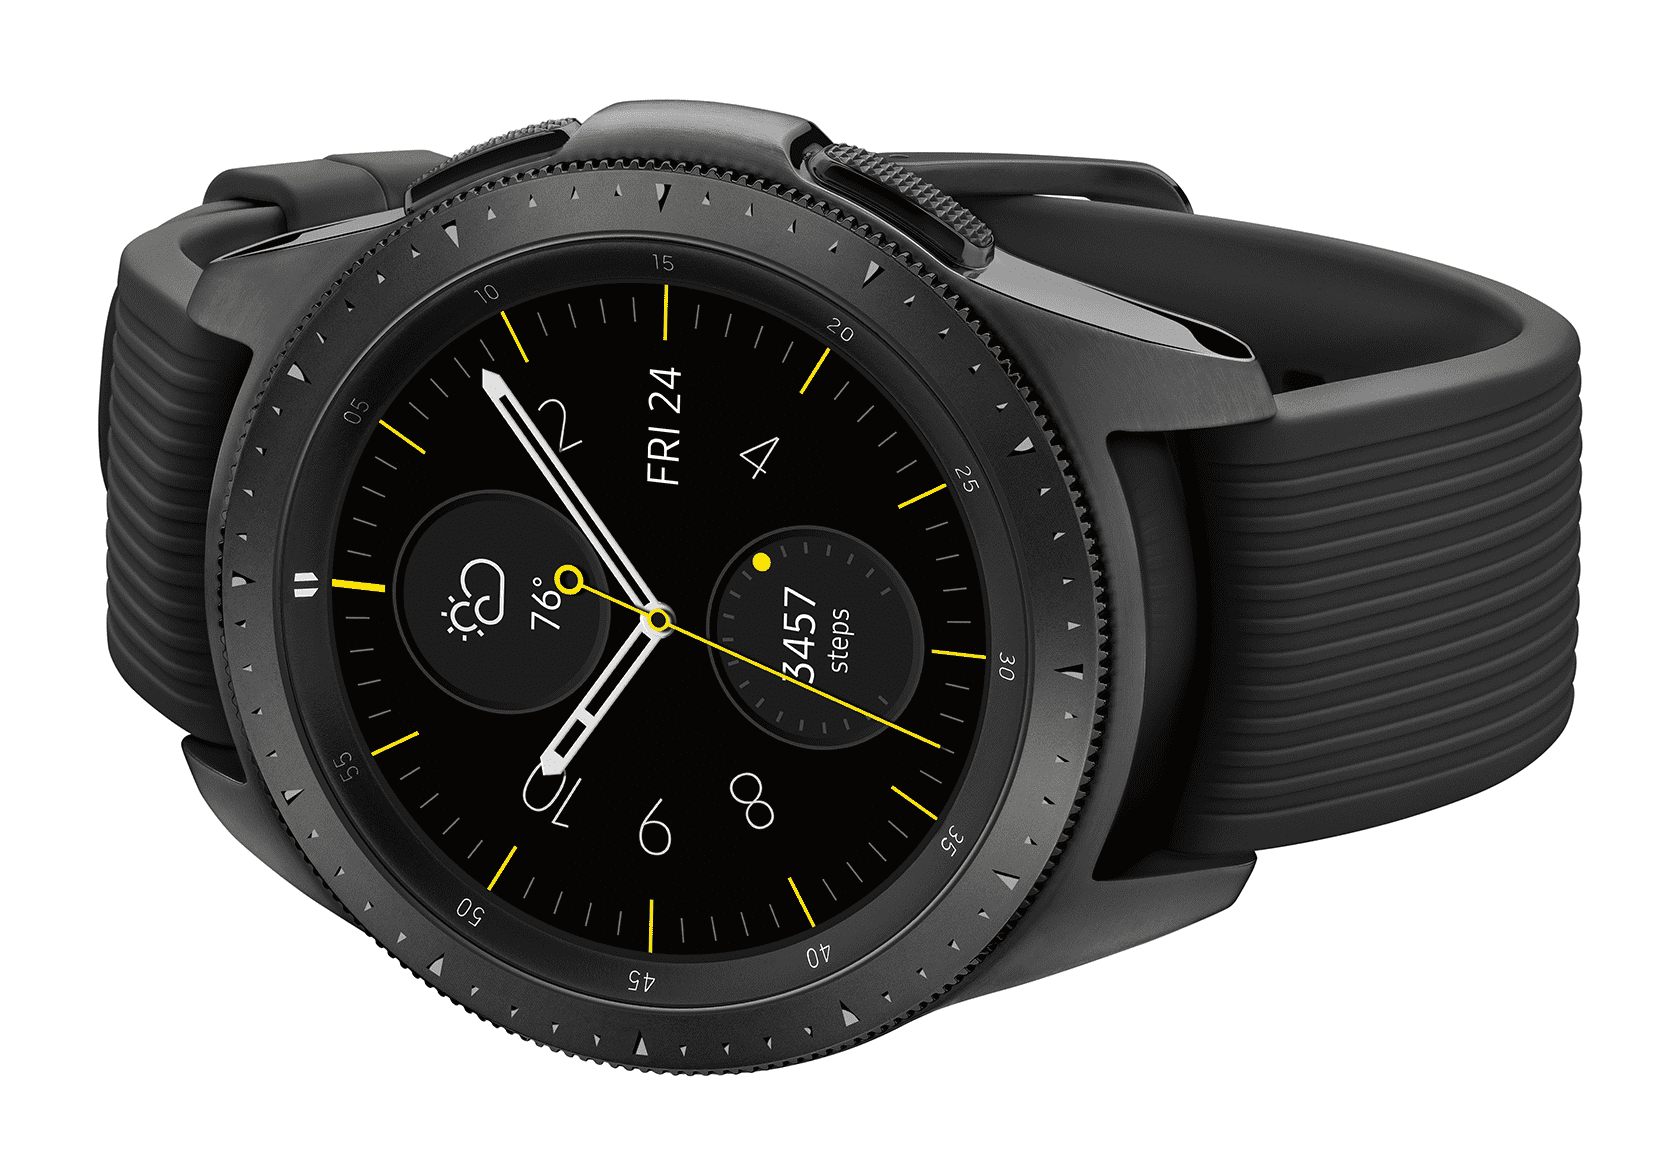 Galaxy watch r810. Samsung Galaxy watch r810. Samsung Galaxy watch 42mm. Samsung watch 42mm.